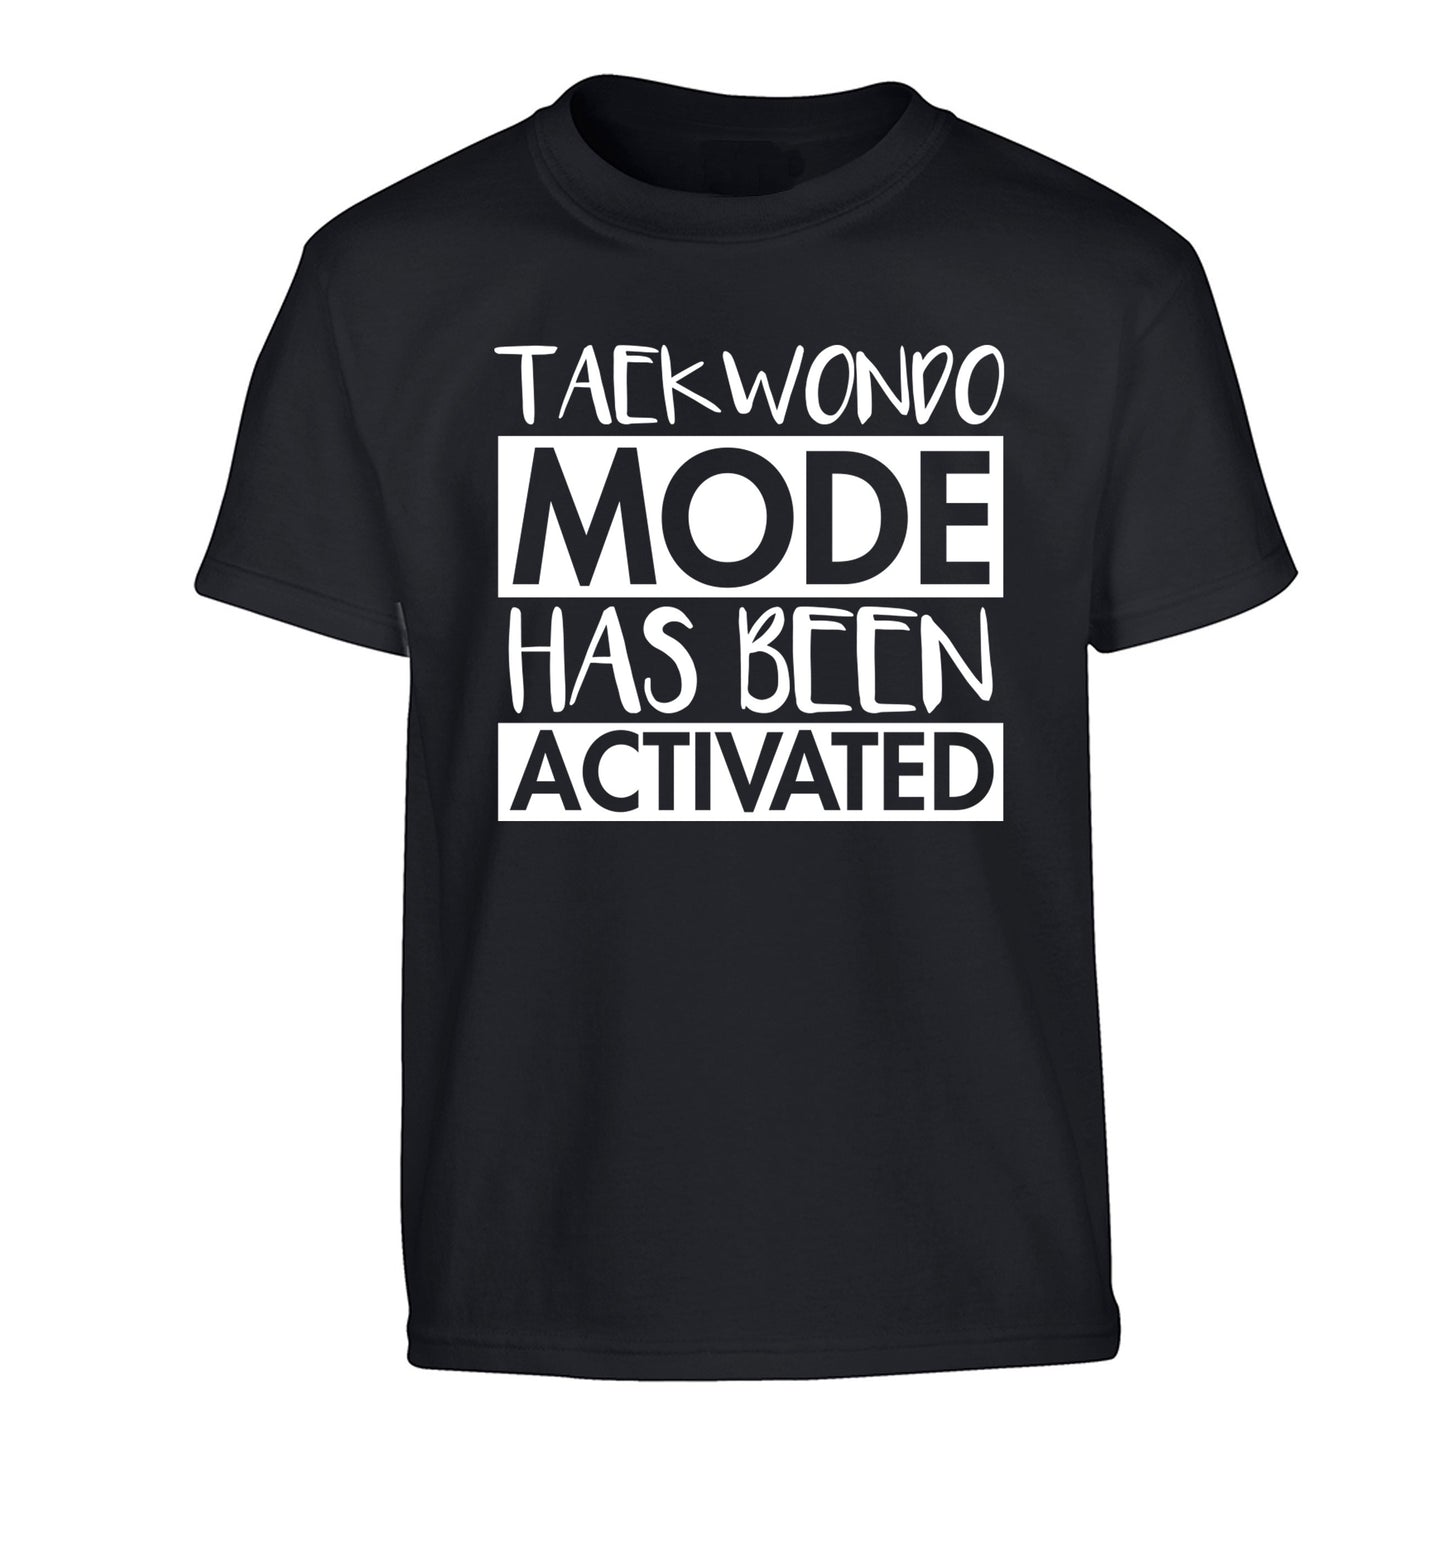 Taekwondo mode activated Children's black Tshirt 12-14 Years